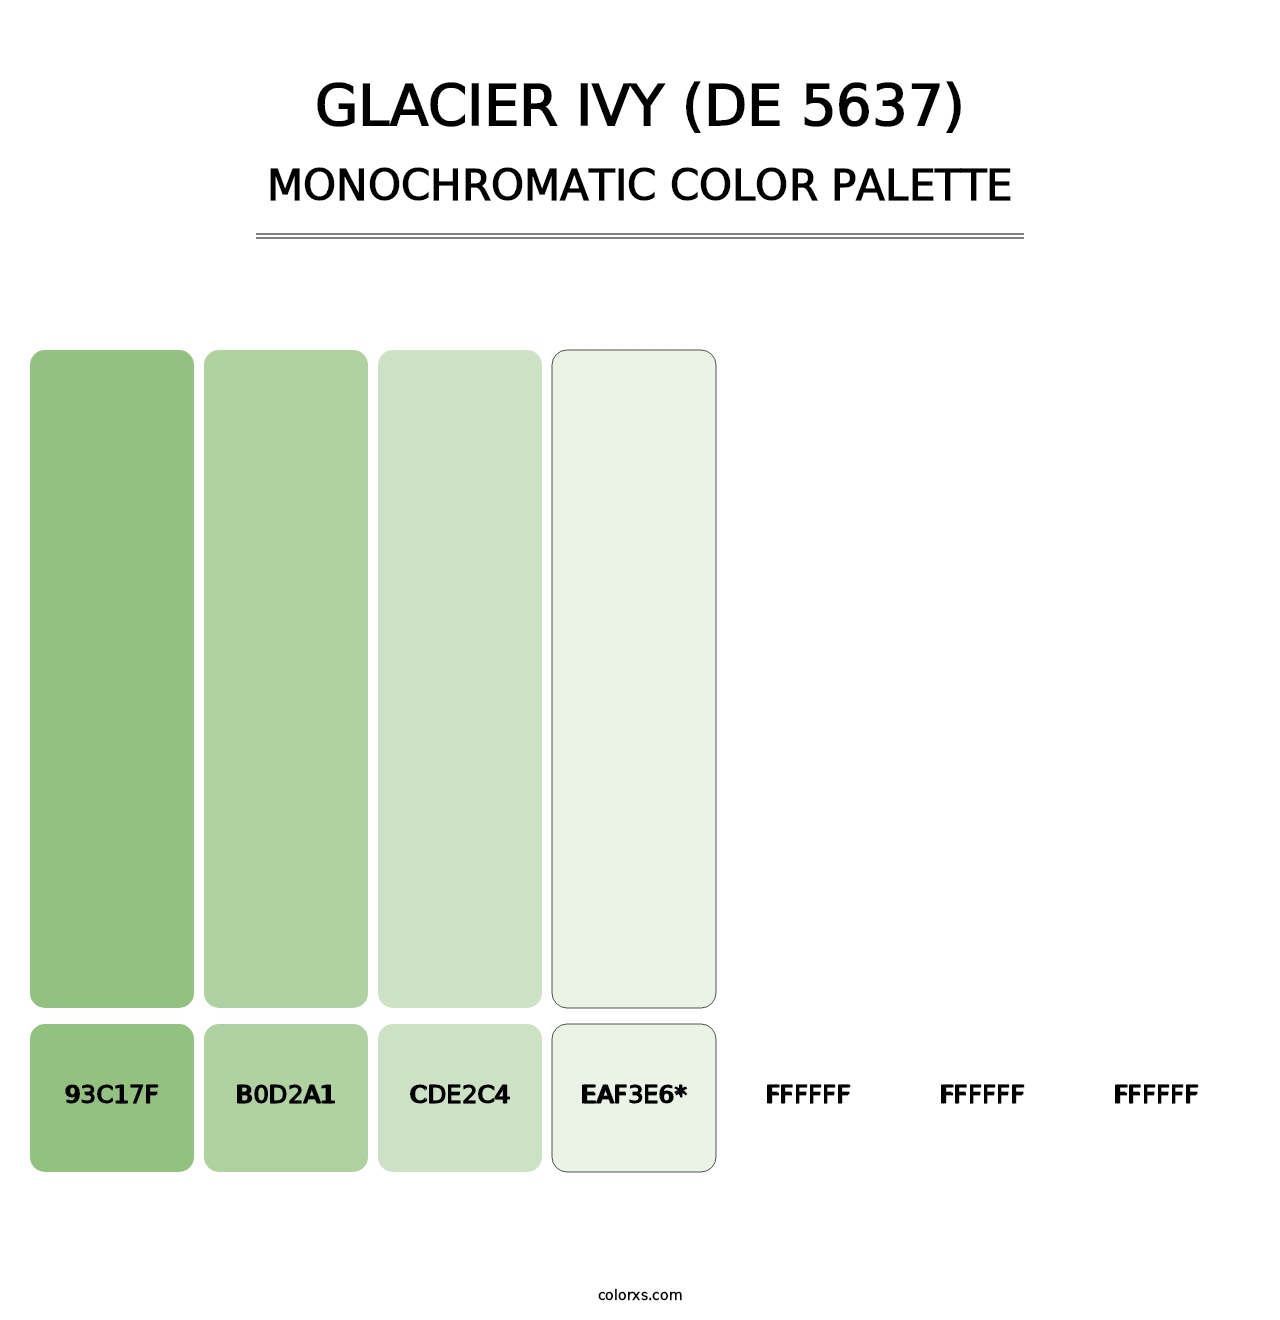 Glacier Ivy (DE 5637) - Monochromatic Color Palette